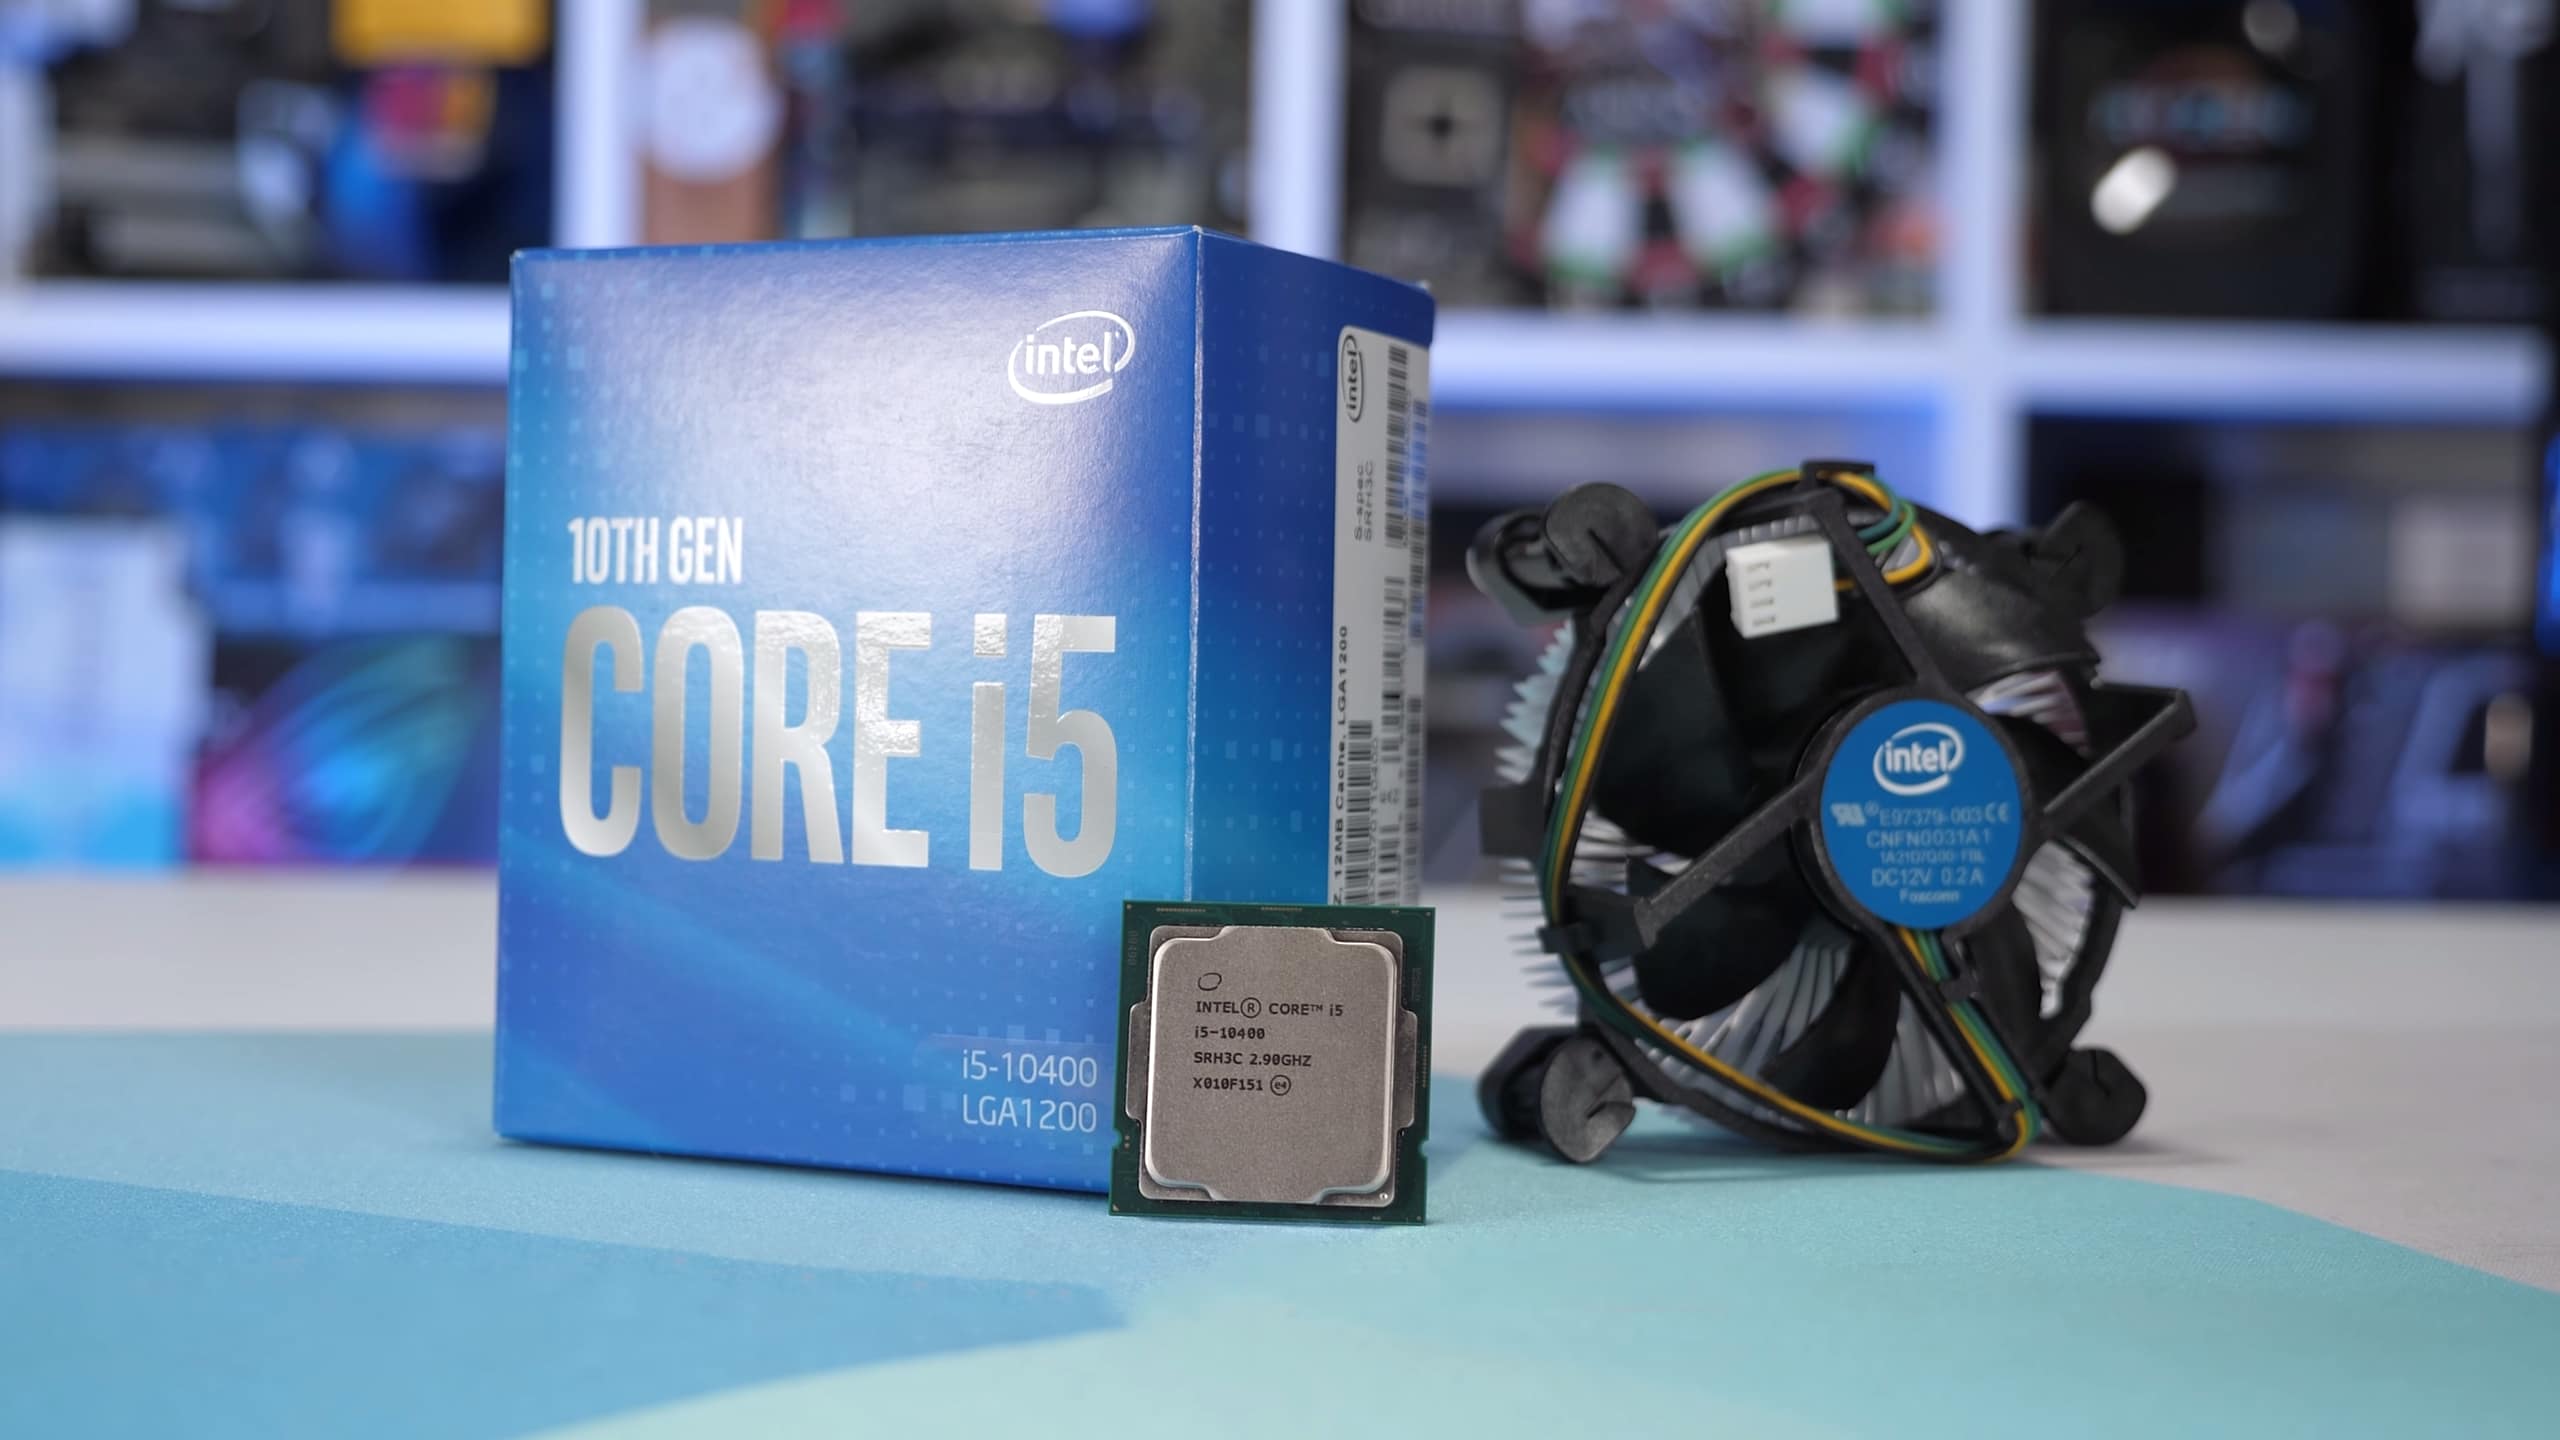 V balení procesora Intel Core i5-10400 potom nájdete vylepšený chladič typu Box, ktorý zaistí bezpečnú prevádzku vďaka vysokej úrovni absorbcie tepla z CPU.